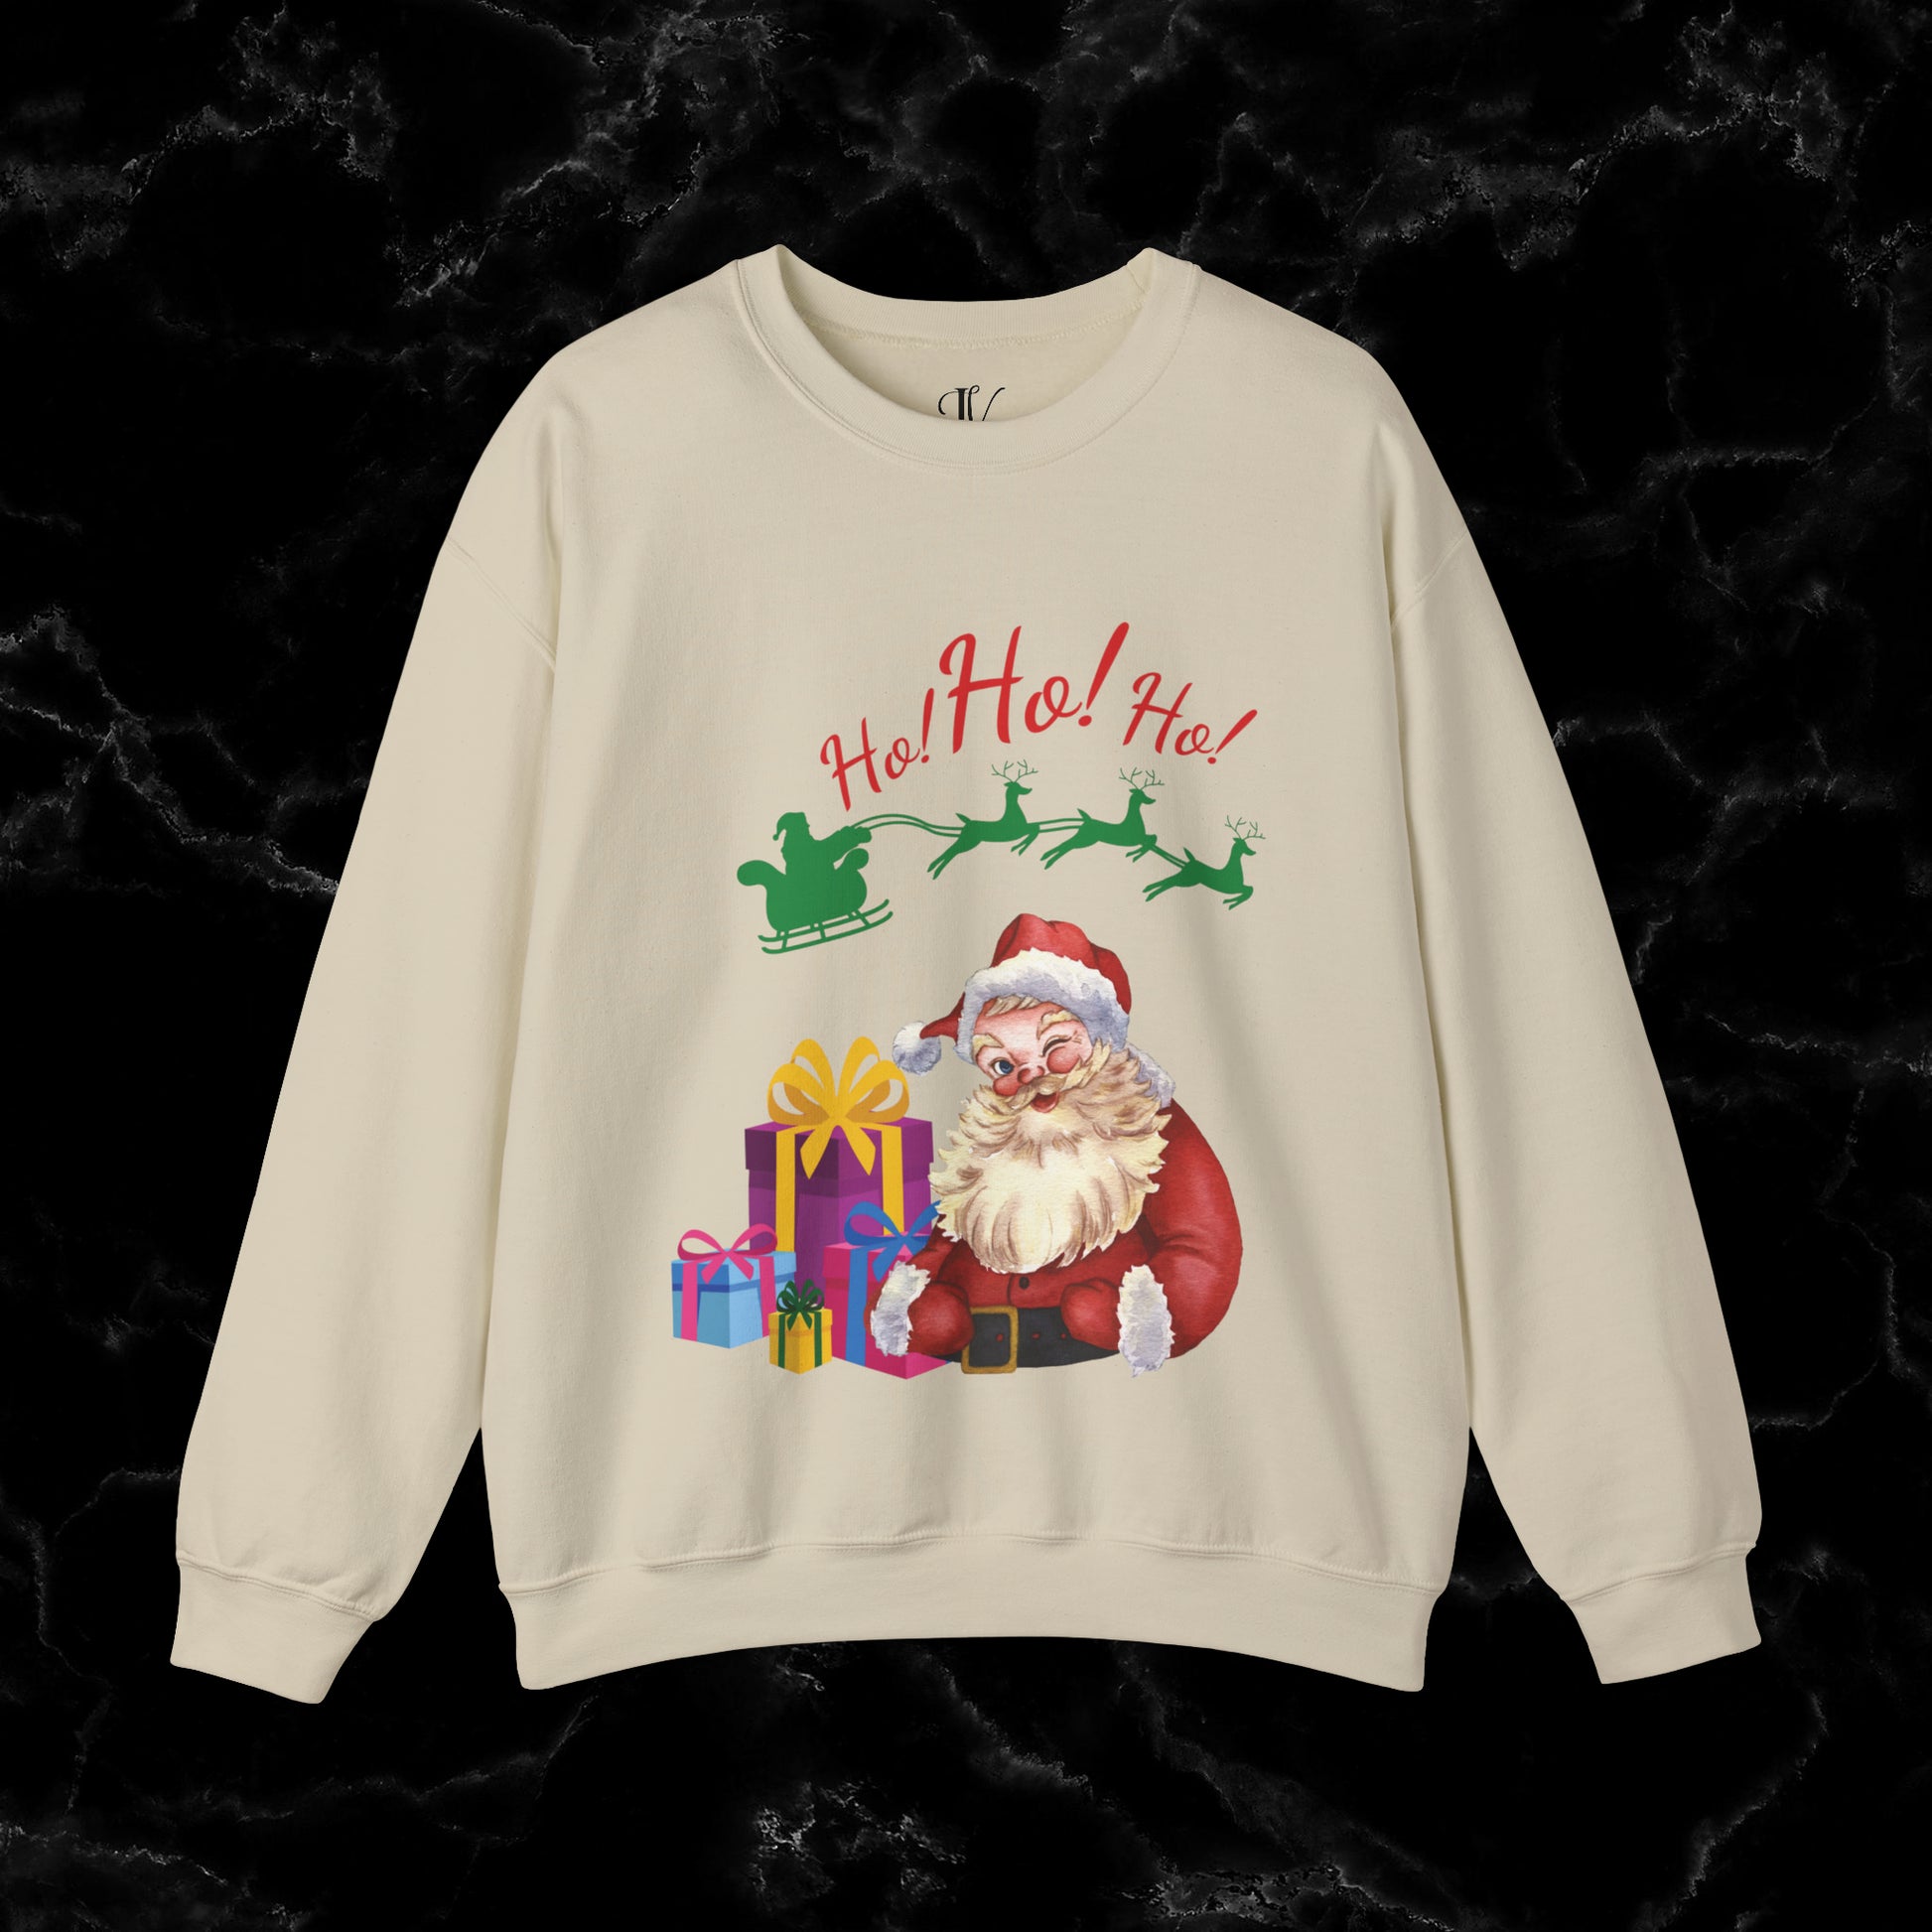 Retro Santa Sweatshirt - Vintage Christmas Fashion for Holiday Cheer Sweatshirt S Sand 